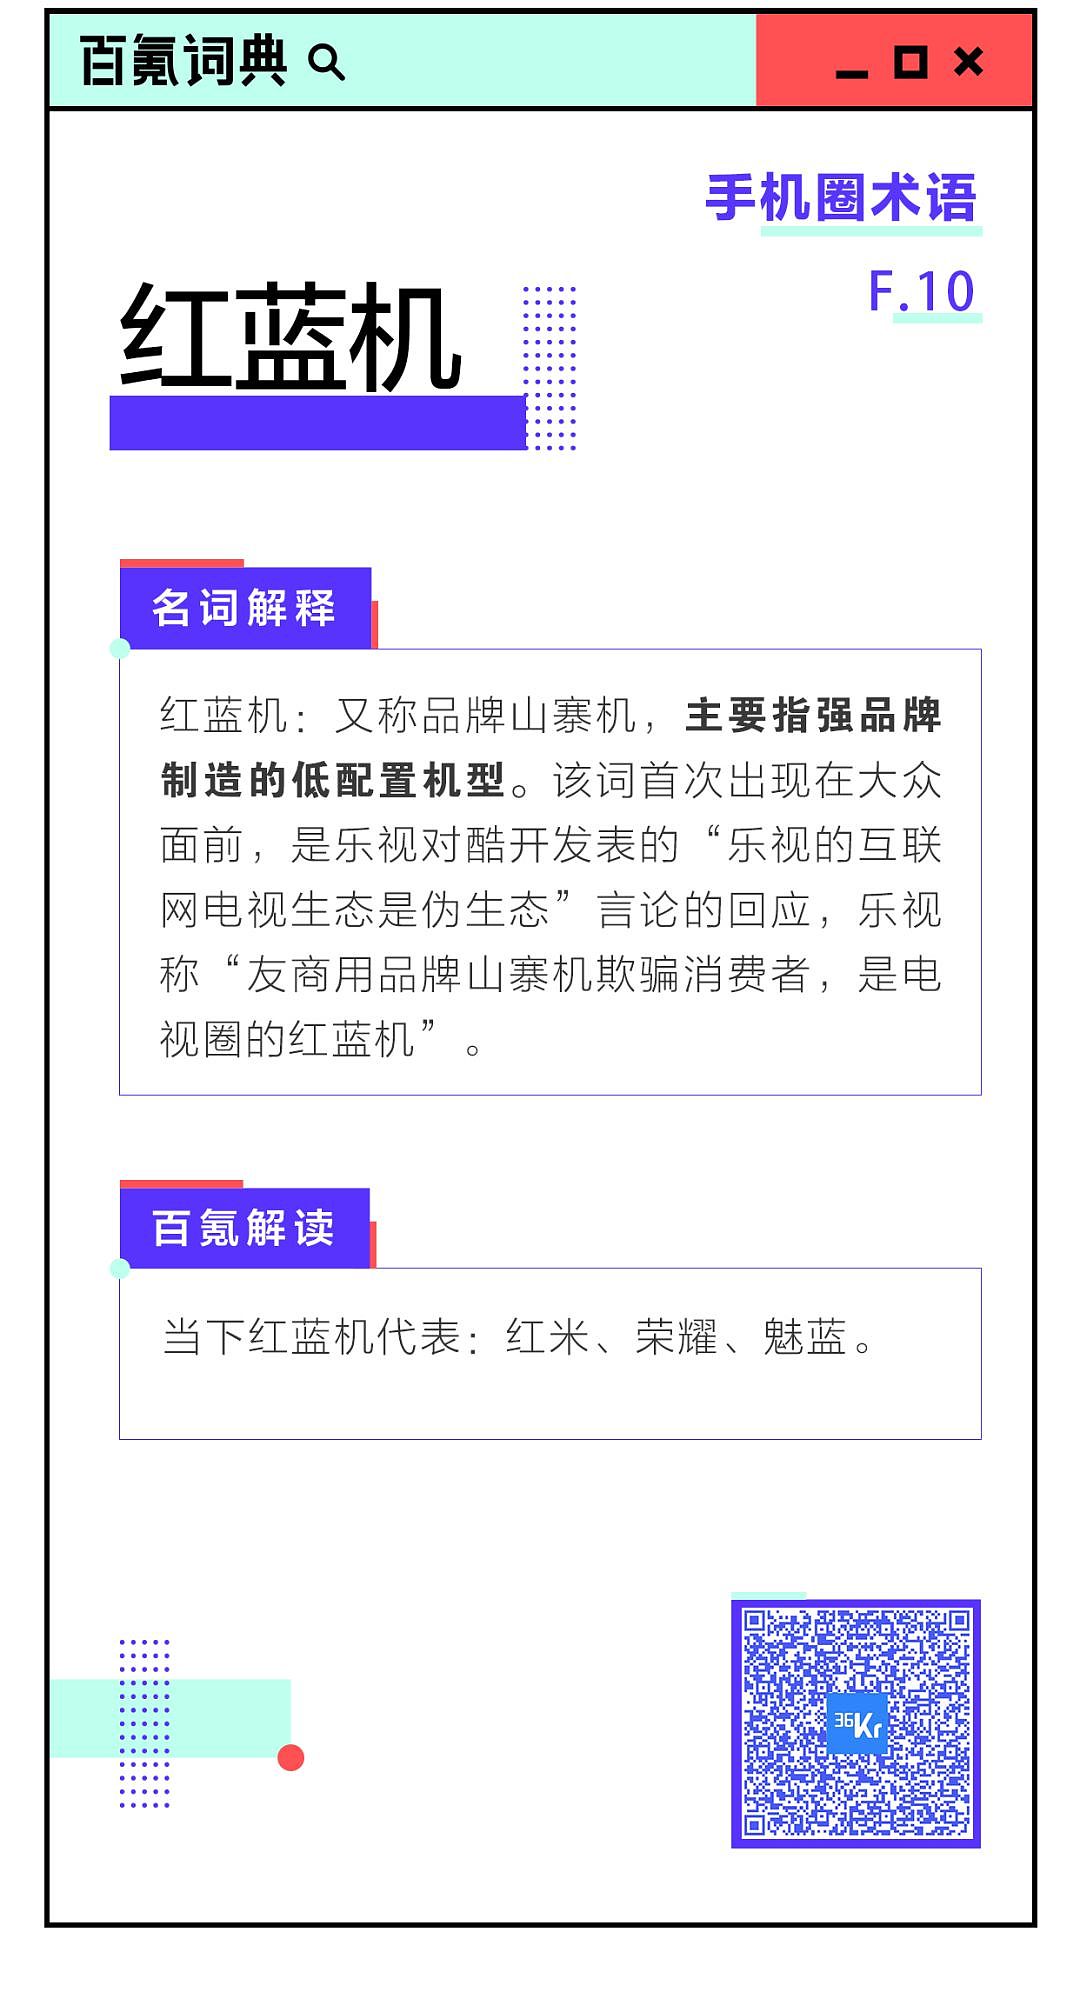 8点1氪：库克：iPhone 11中国定价策略成功；京东双11大促价疑遭提前泄露；坚果Pro 3正式发布，2899元起 - 17